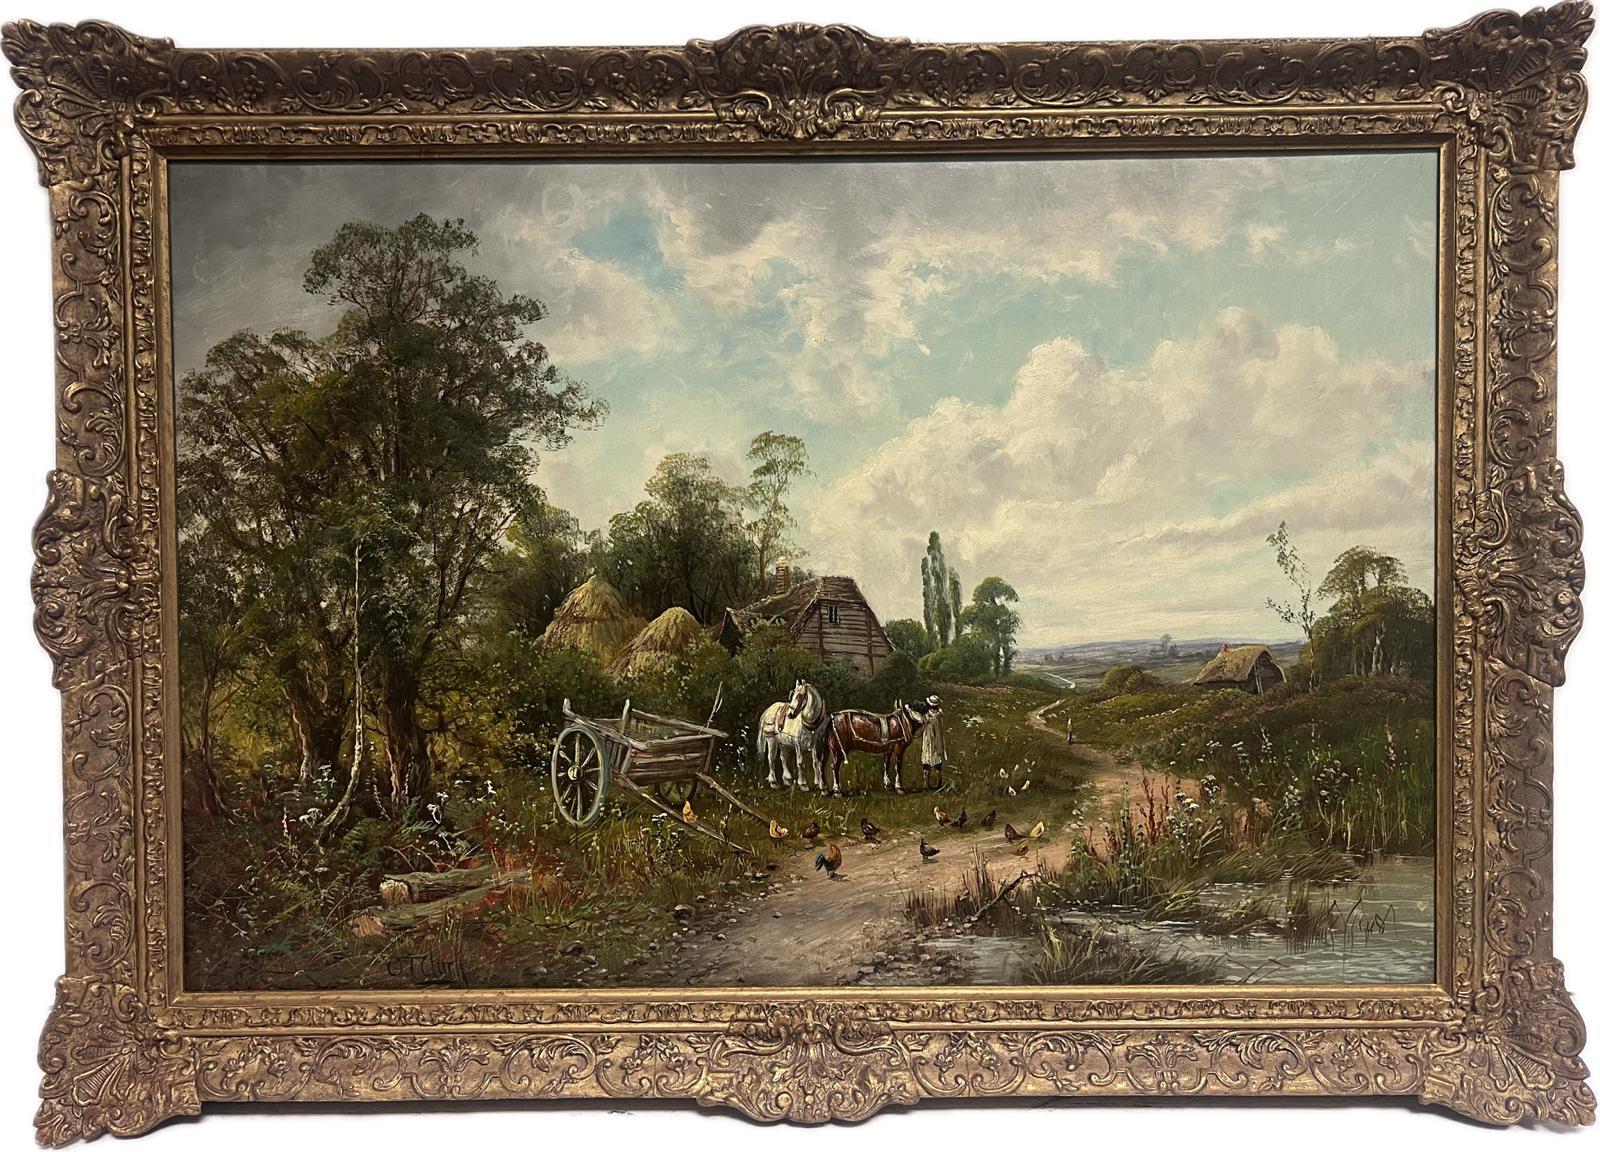 Großes viktorianisches, ländliches, englisches Ölgemälde mit Pferden und Hühnern, Bauernhof-Landschaft